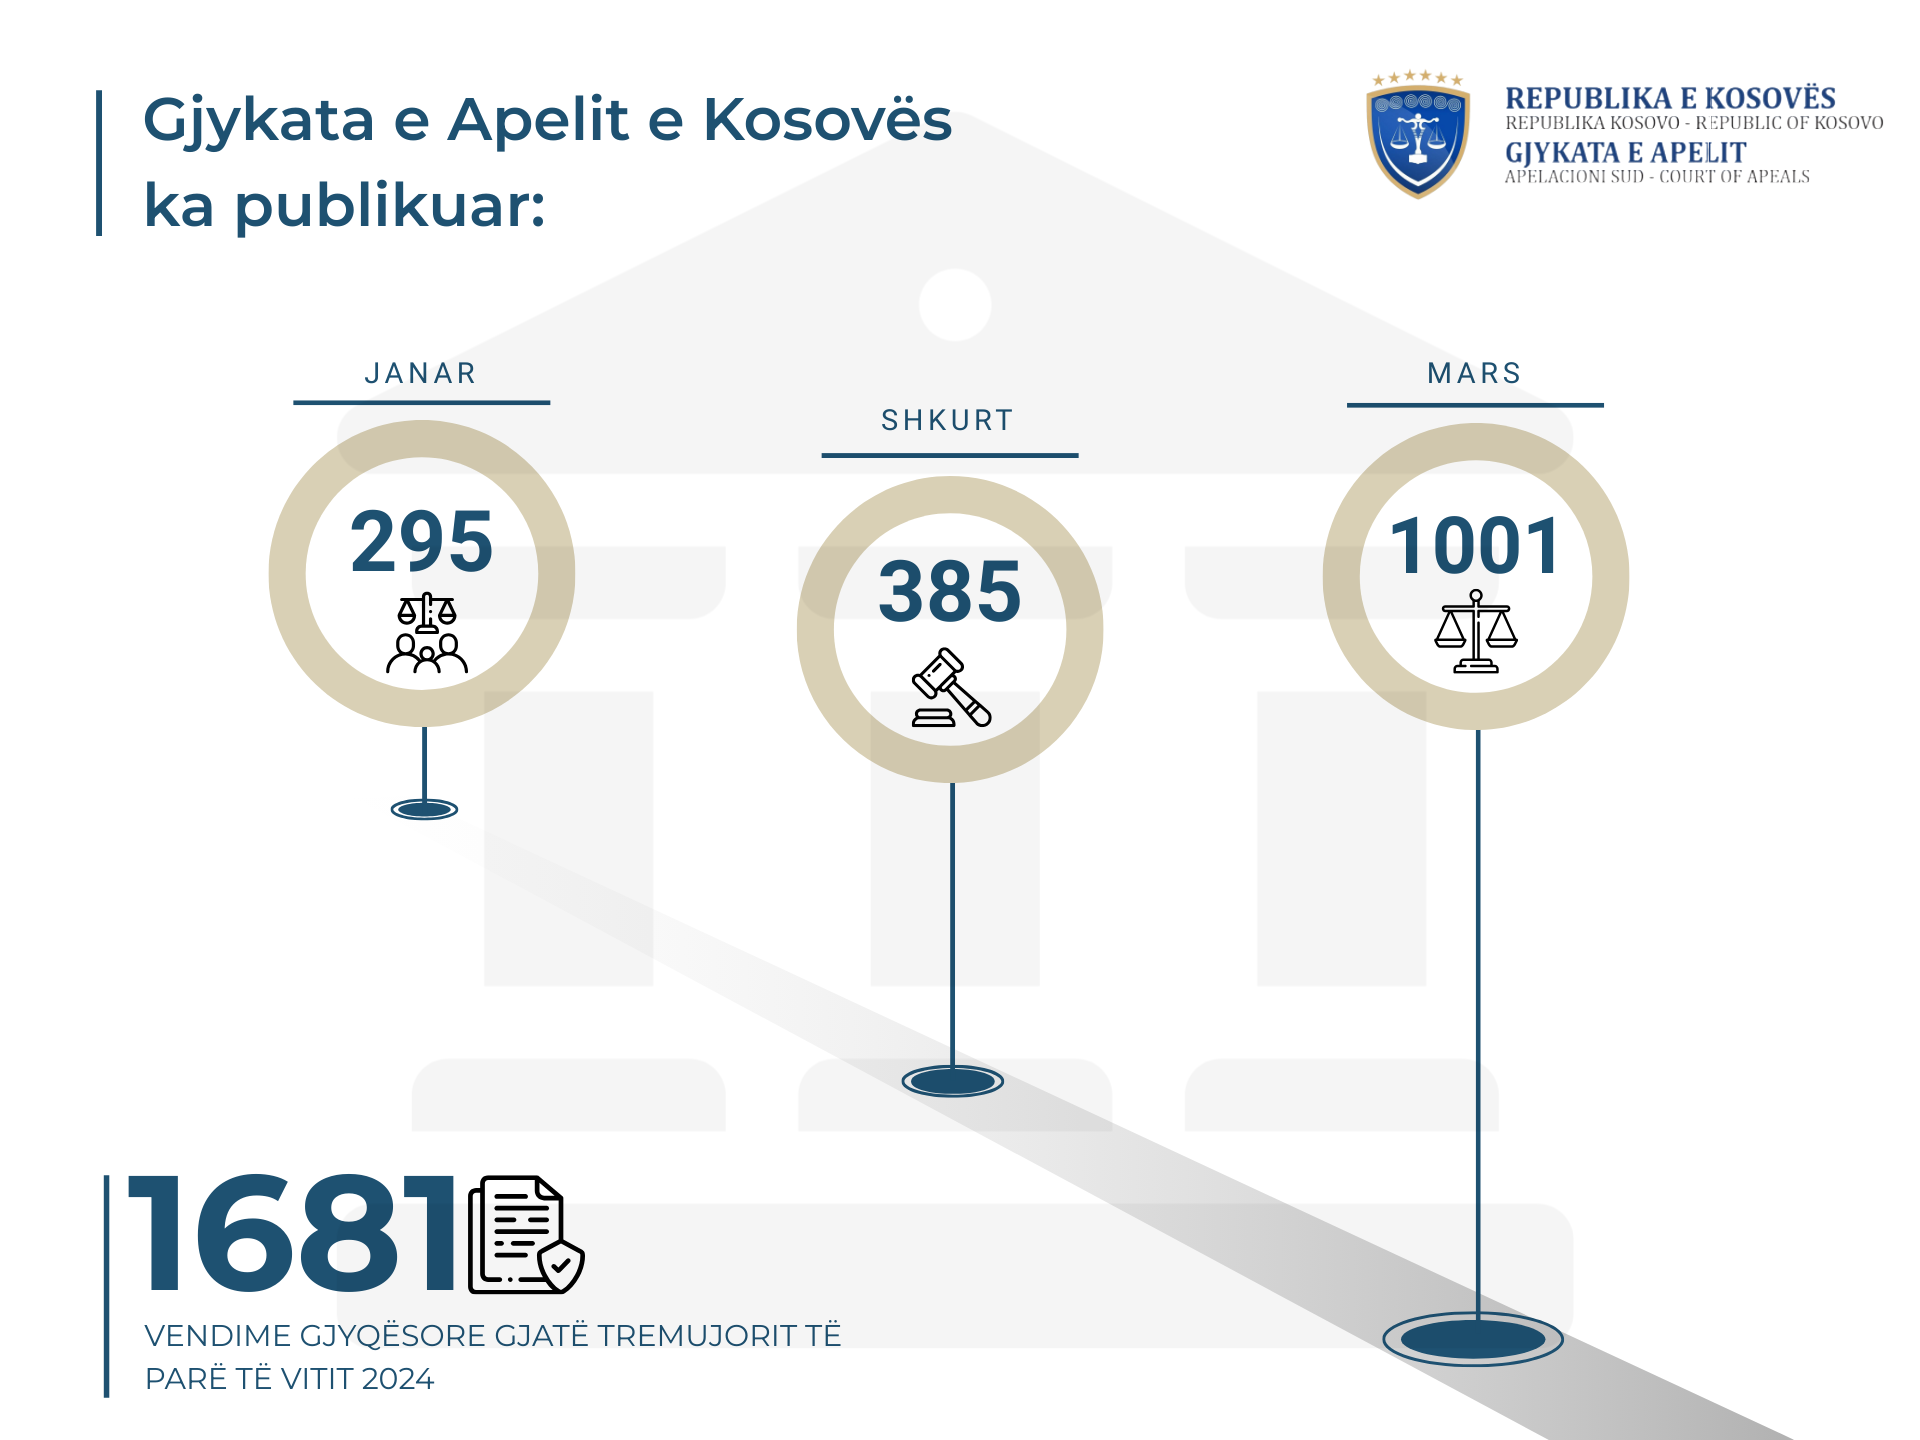 Gjykata e Apelit e Kosovës gjatë tremujorit të parë të vitit 2024, ka publikuar 1681 vendime gjyqësore